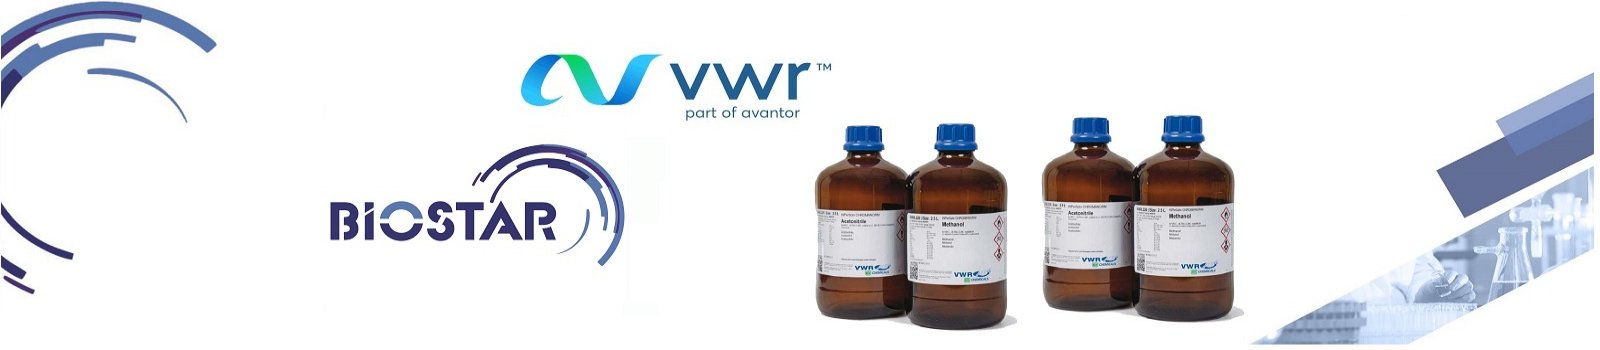 VWR ürünleri Biostar'da